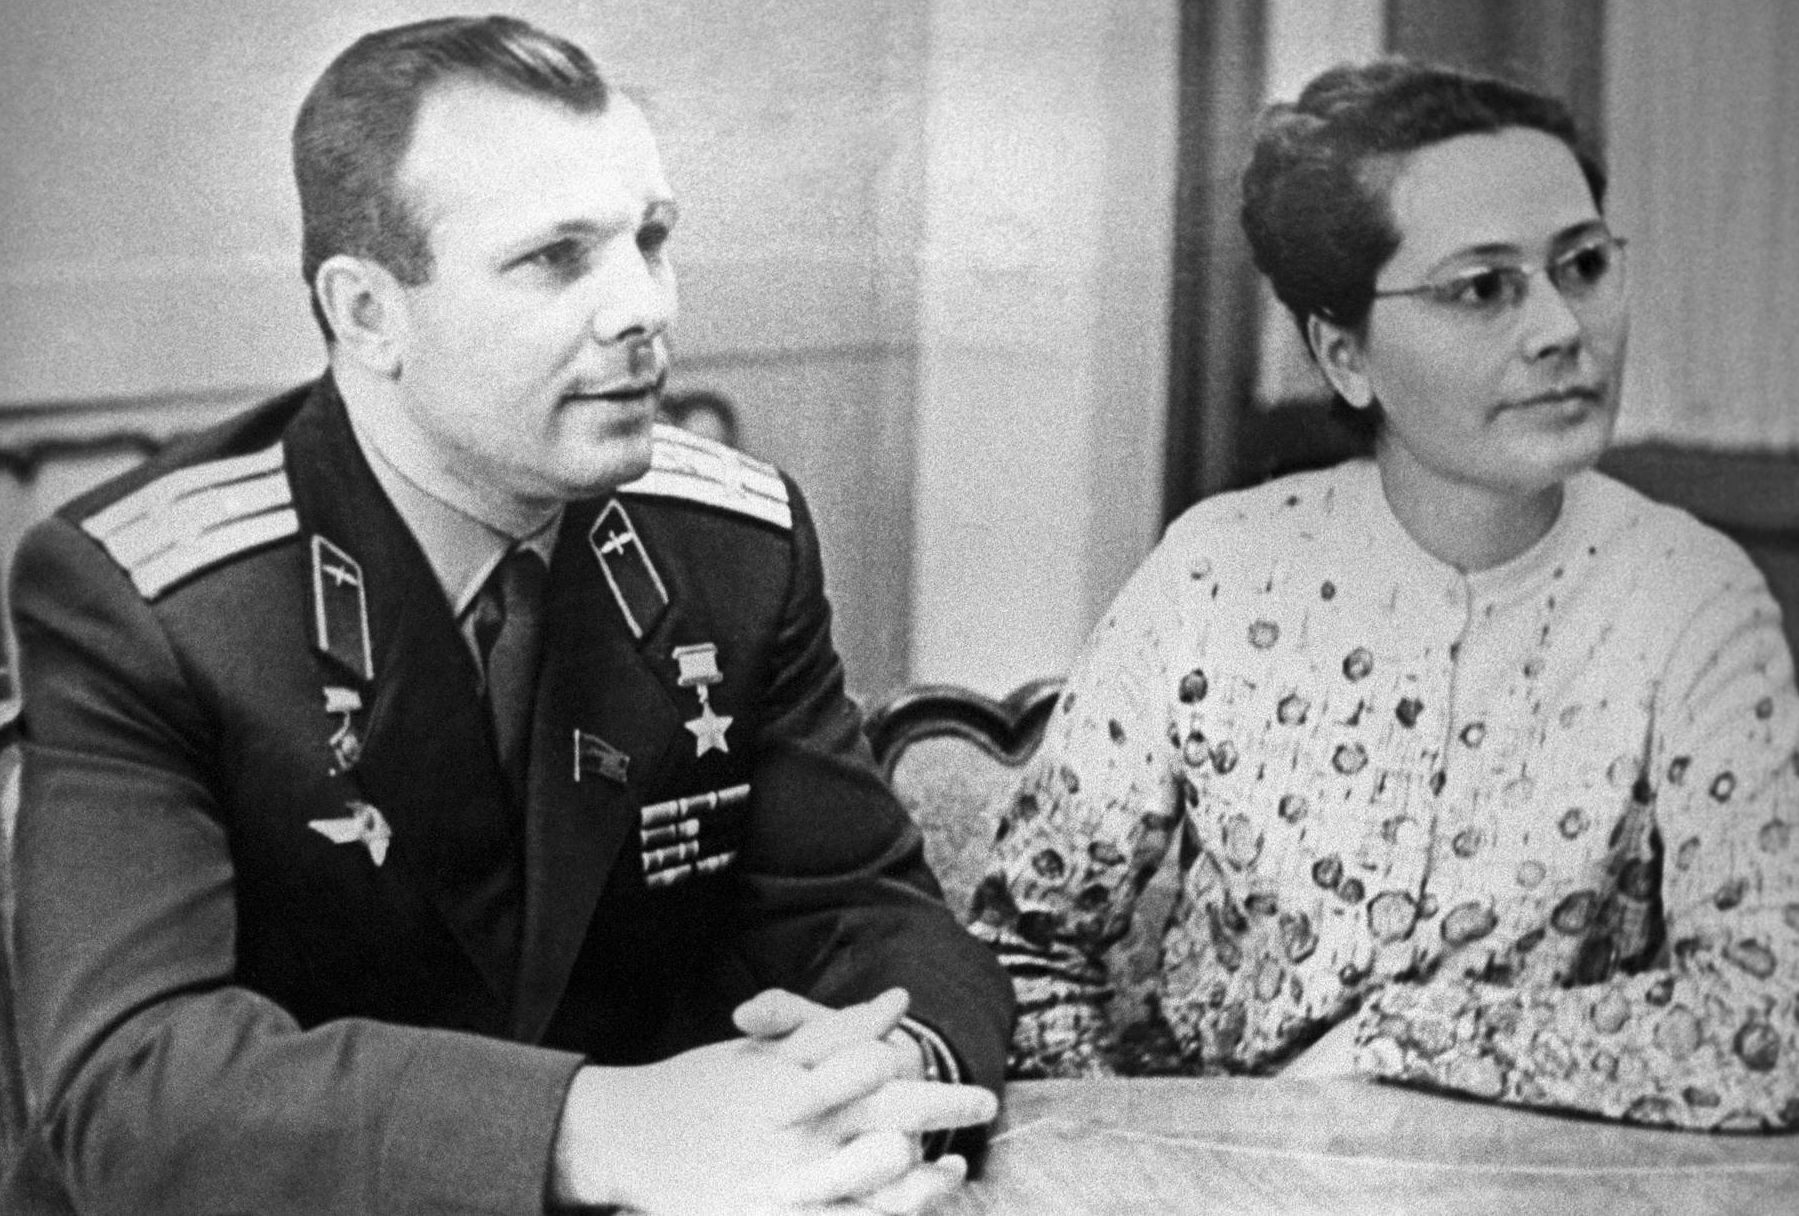 Гагарин семья жена